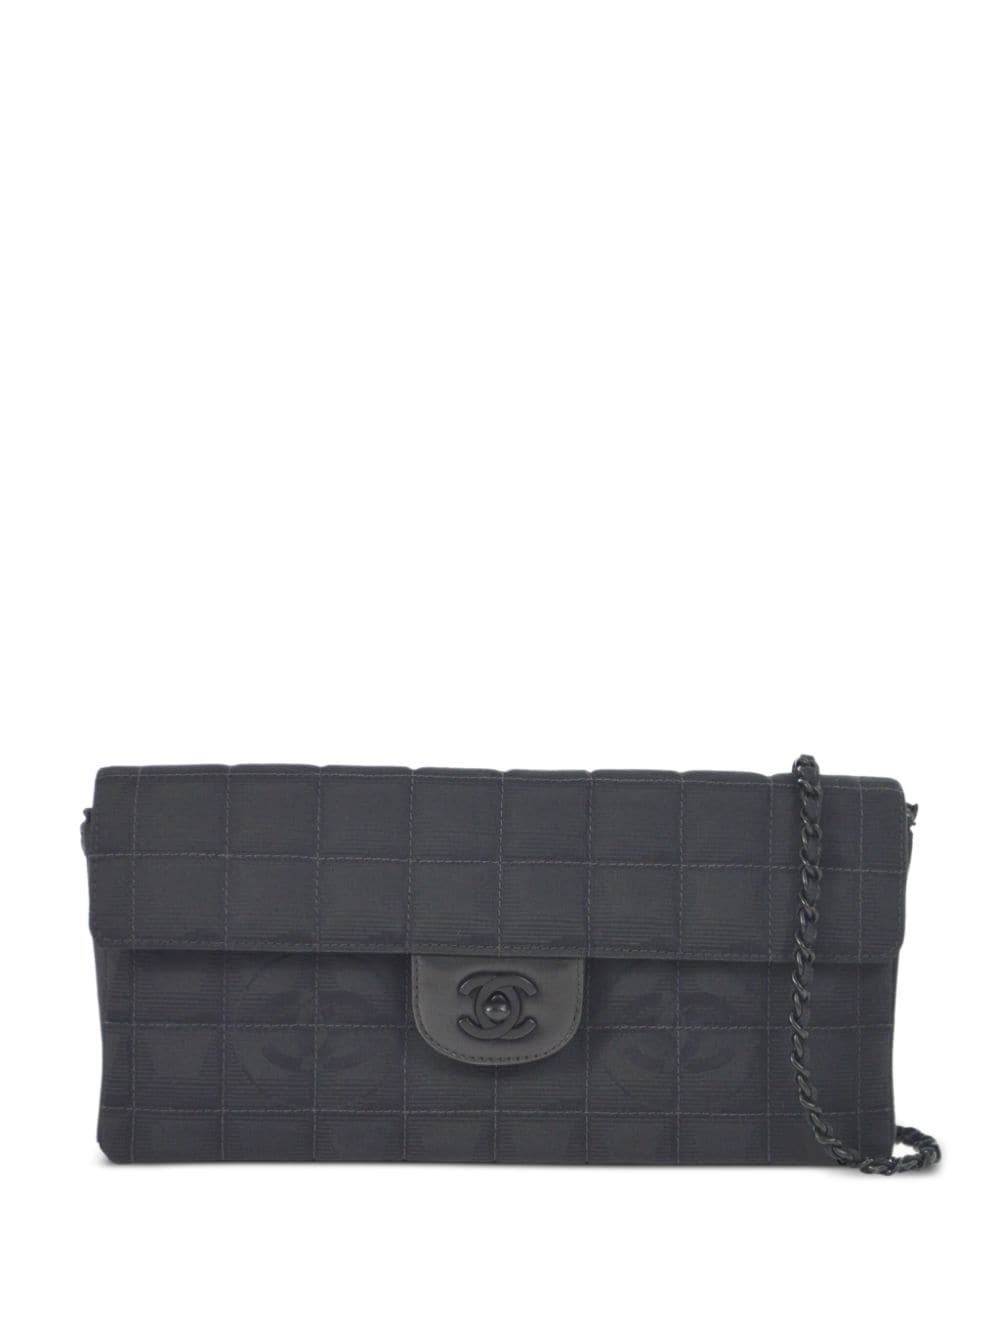 Pre-owned Chanel 2002 East West Flap Shoulder Bag In Black